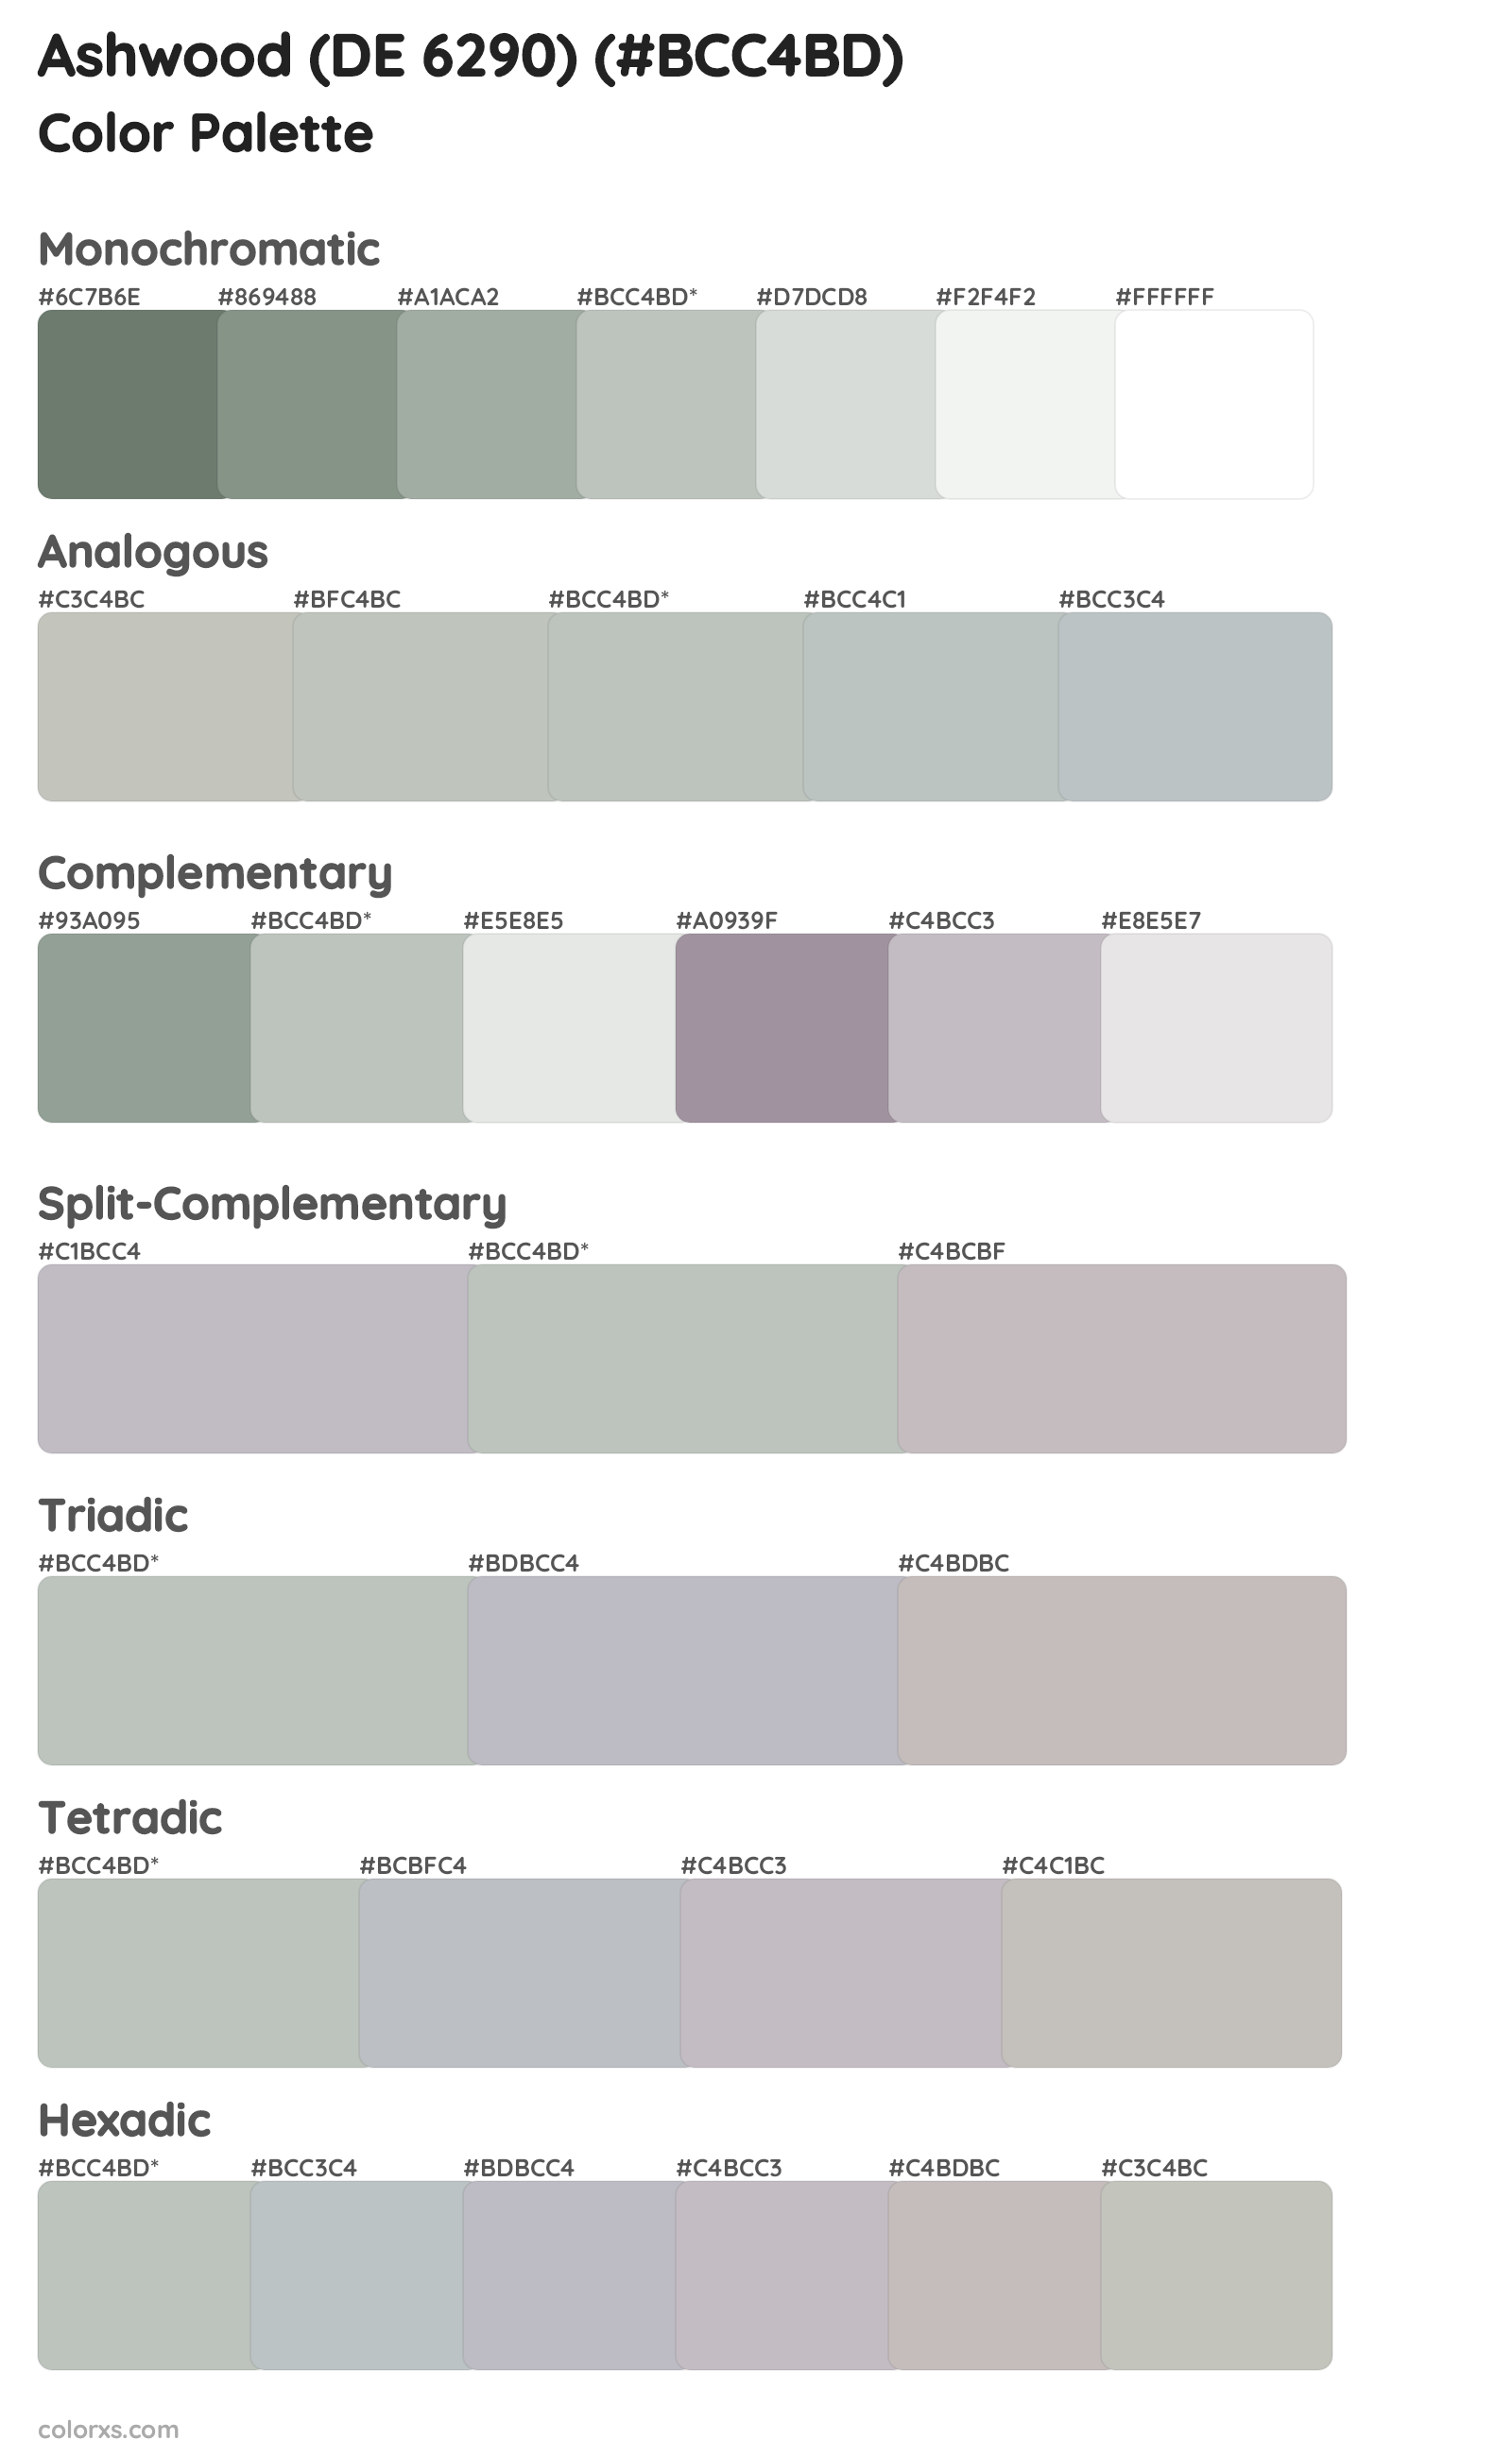 Ashwood (DE 6290) Color Scheme Palettes